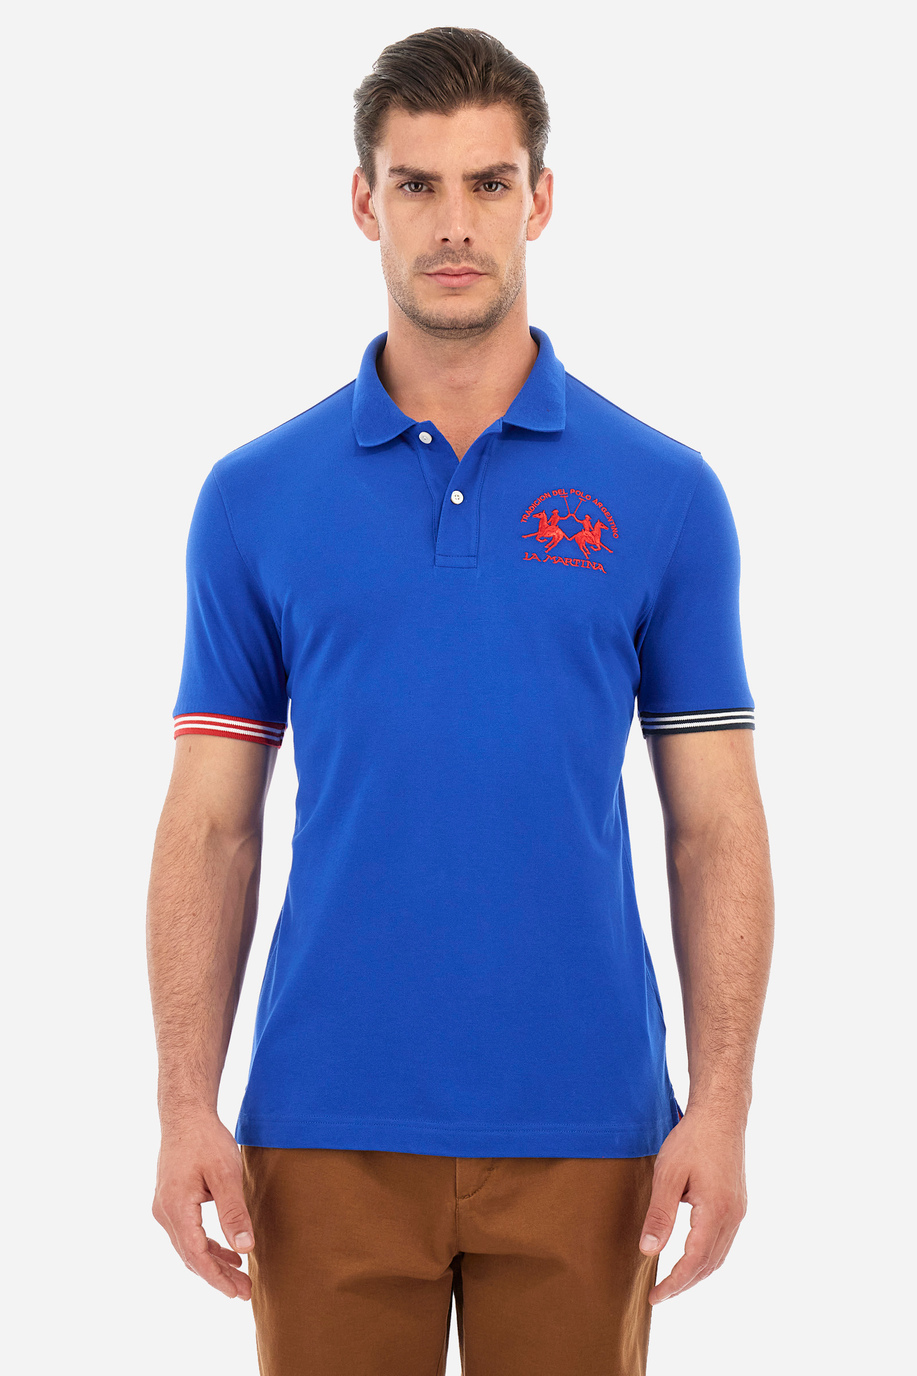 Herren-Poloshirt Regular Fit - Waddell - Kurzarm | La Martina - Official Online Shop